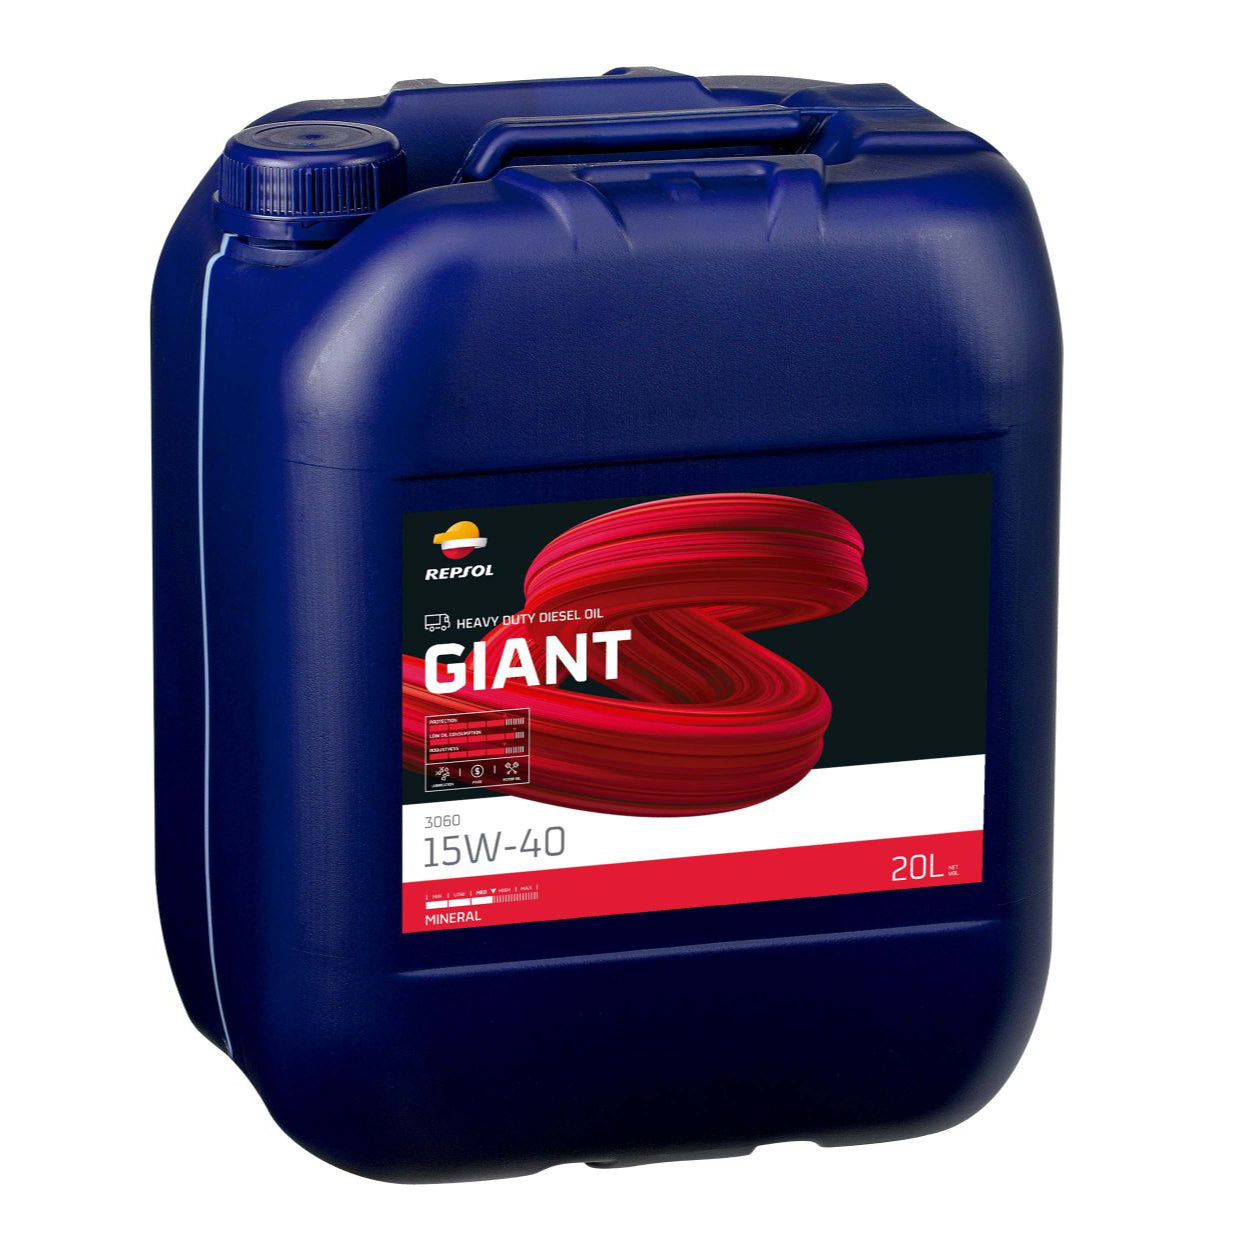 Repsol Giant 3060 15W-40